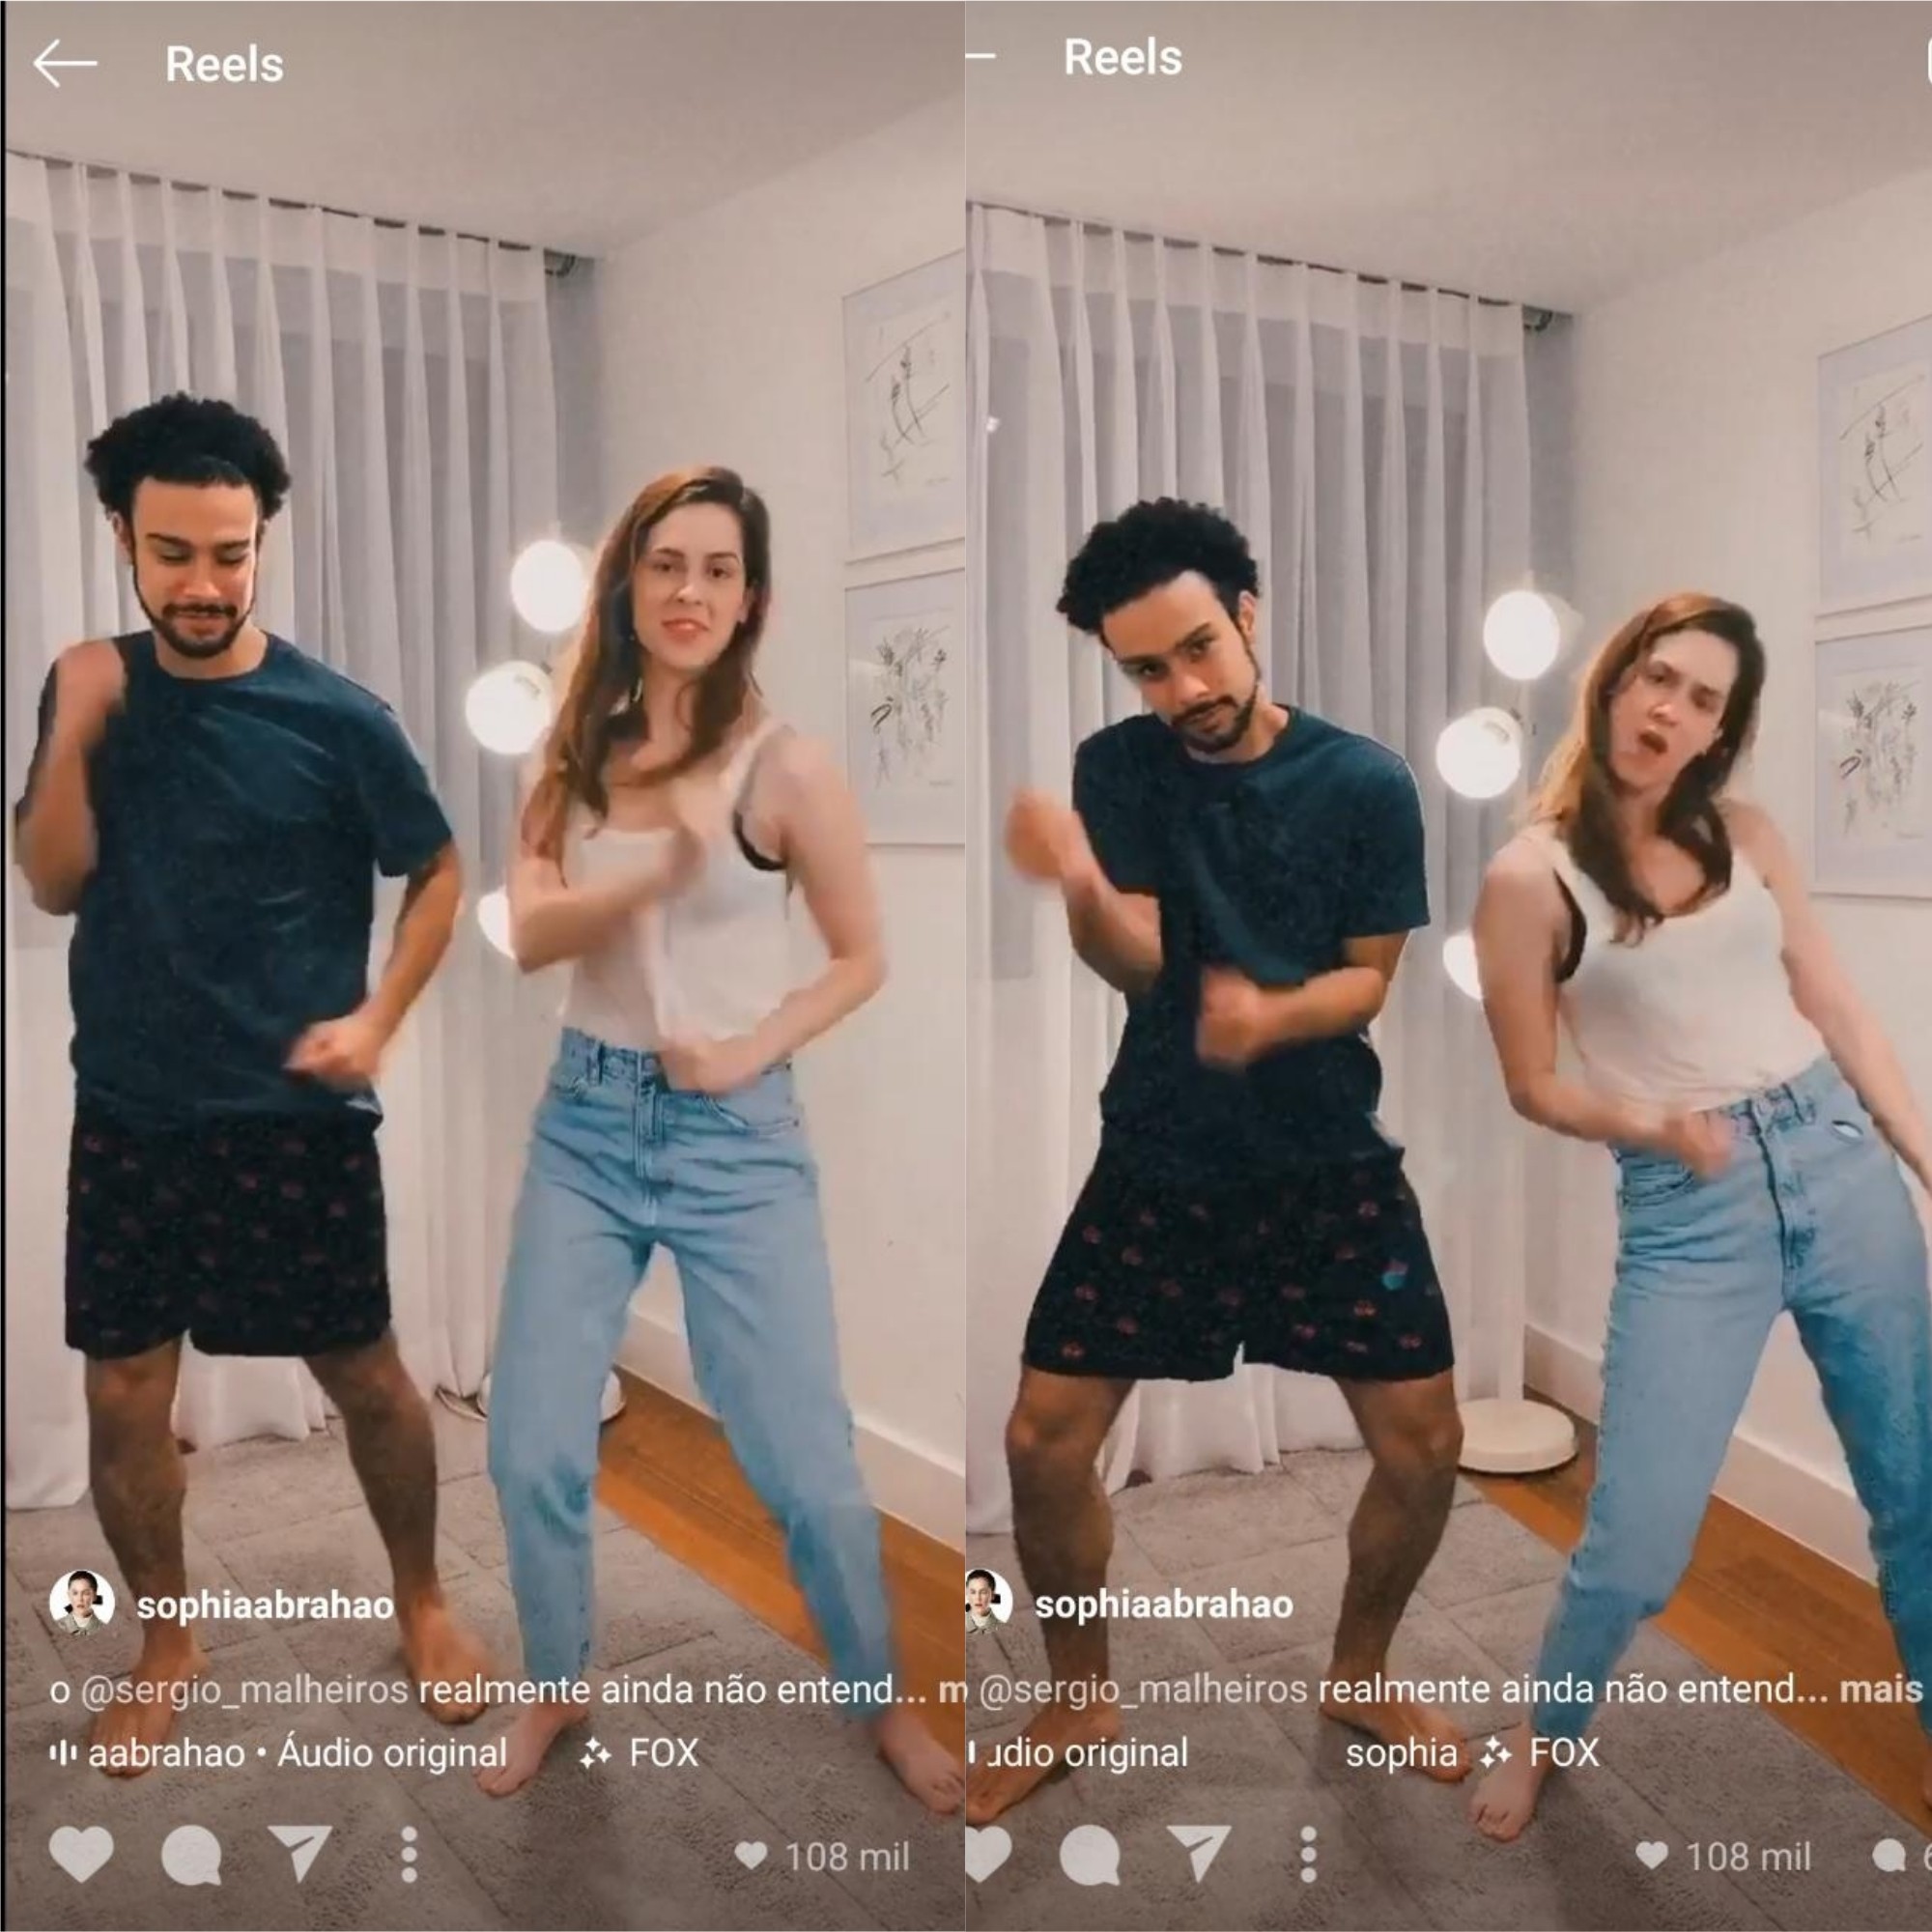 Sophia e Sérgio dançam juntos em vídeo para o Reels (Foto: Reprodução/Instagram)